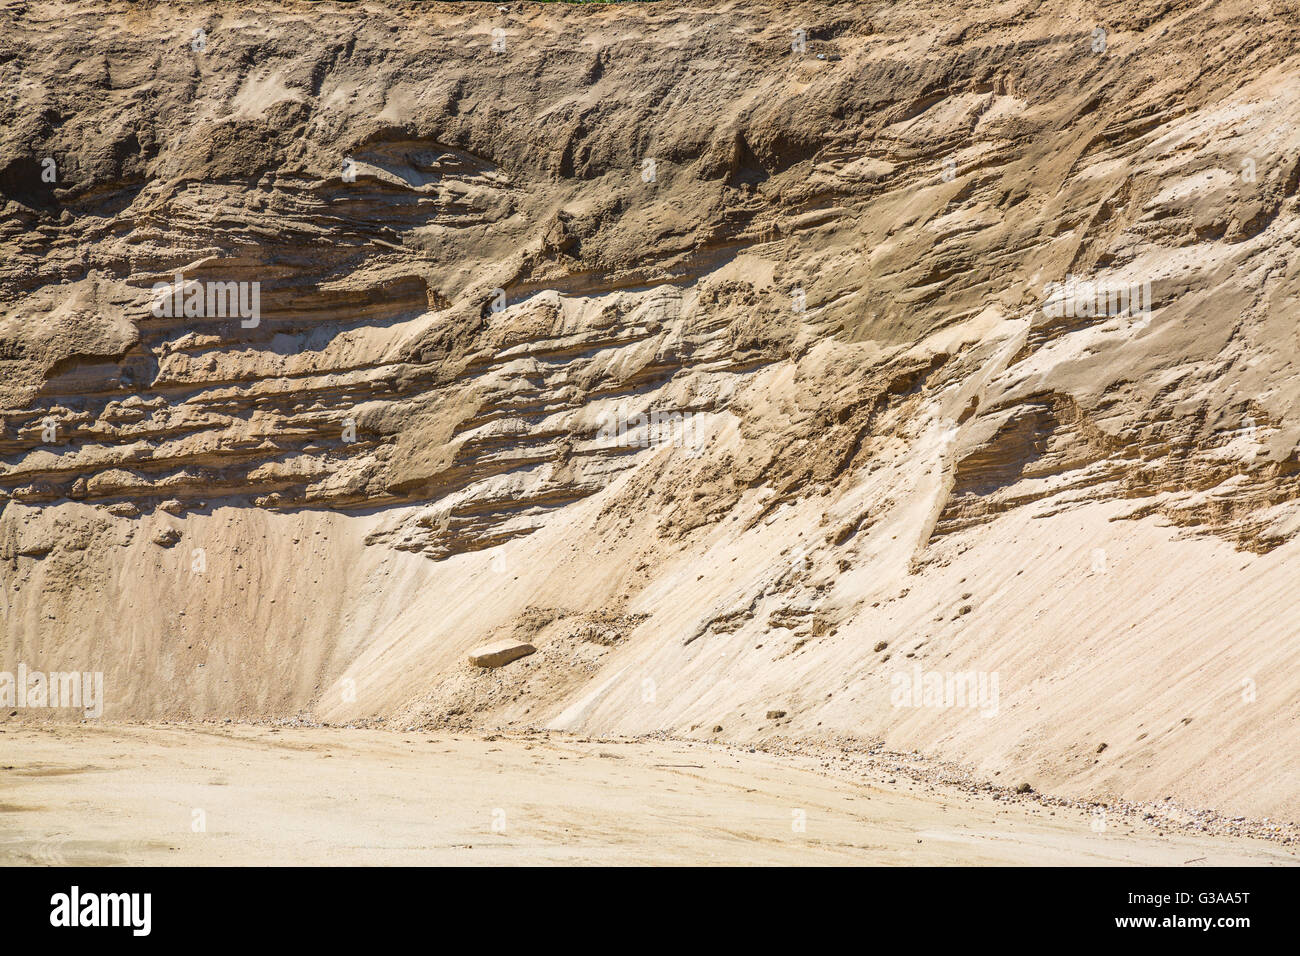 Image d'une carrière de sable et de ses couches de sable Banque D'Images